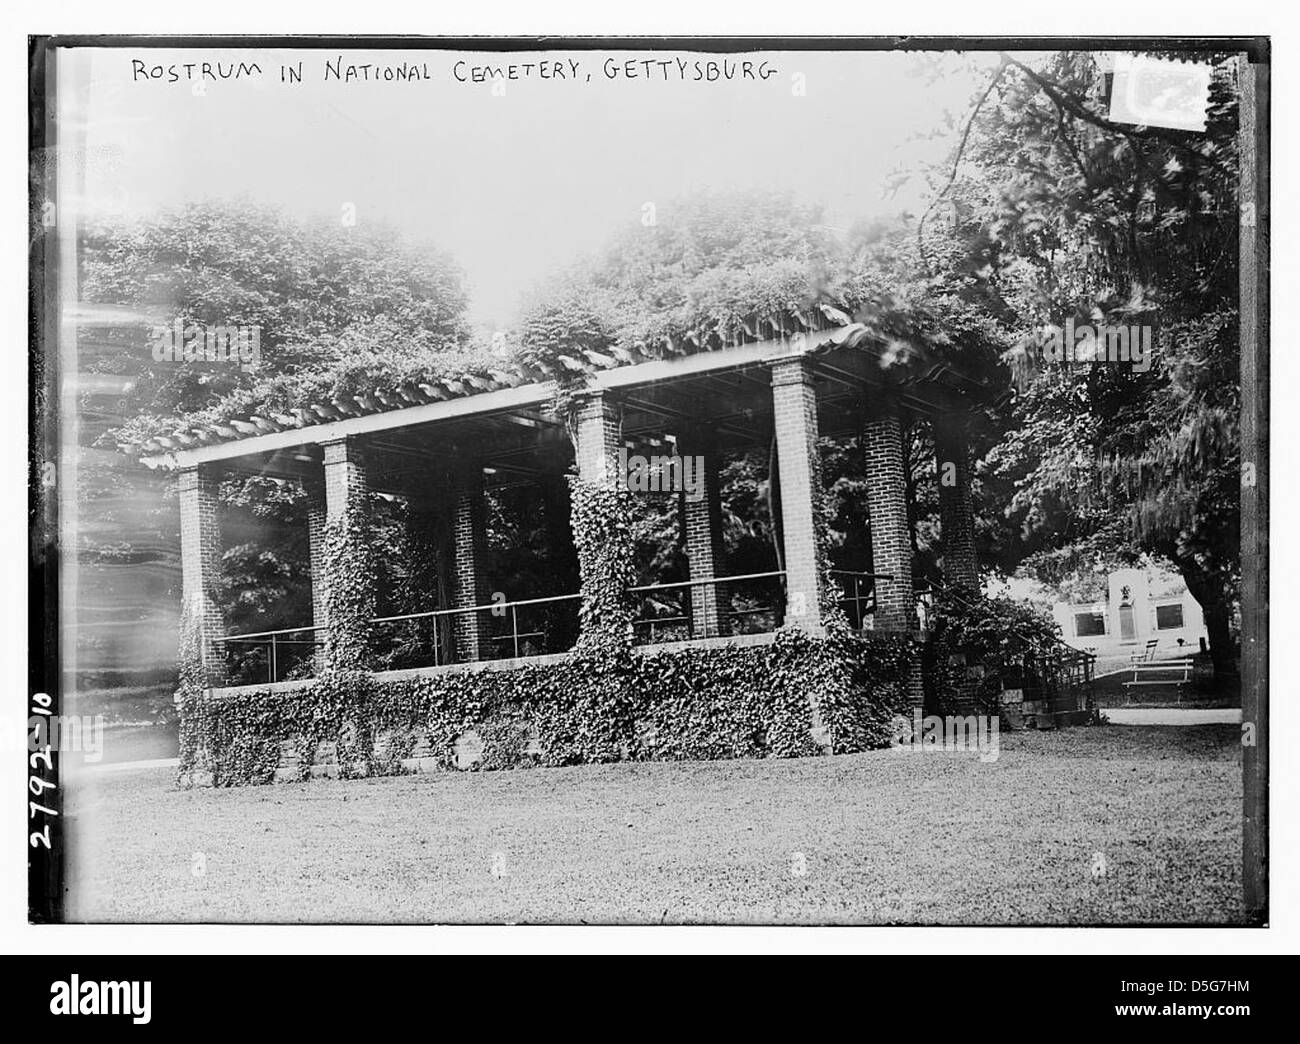 Rostrum in Nat'l Cem. - Gettysburg (LOC) Stock Photo